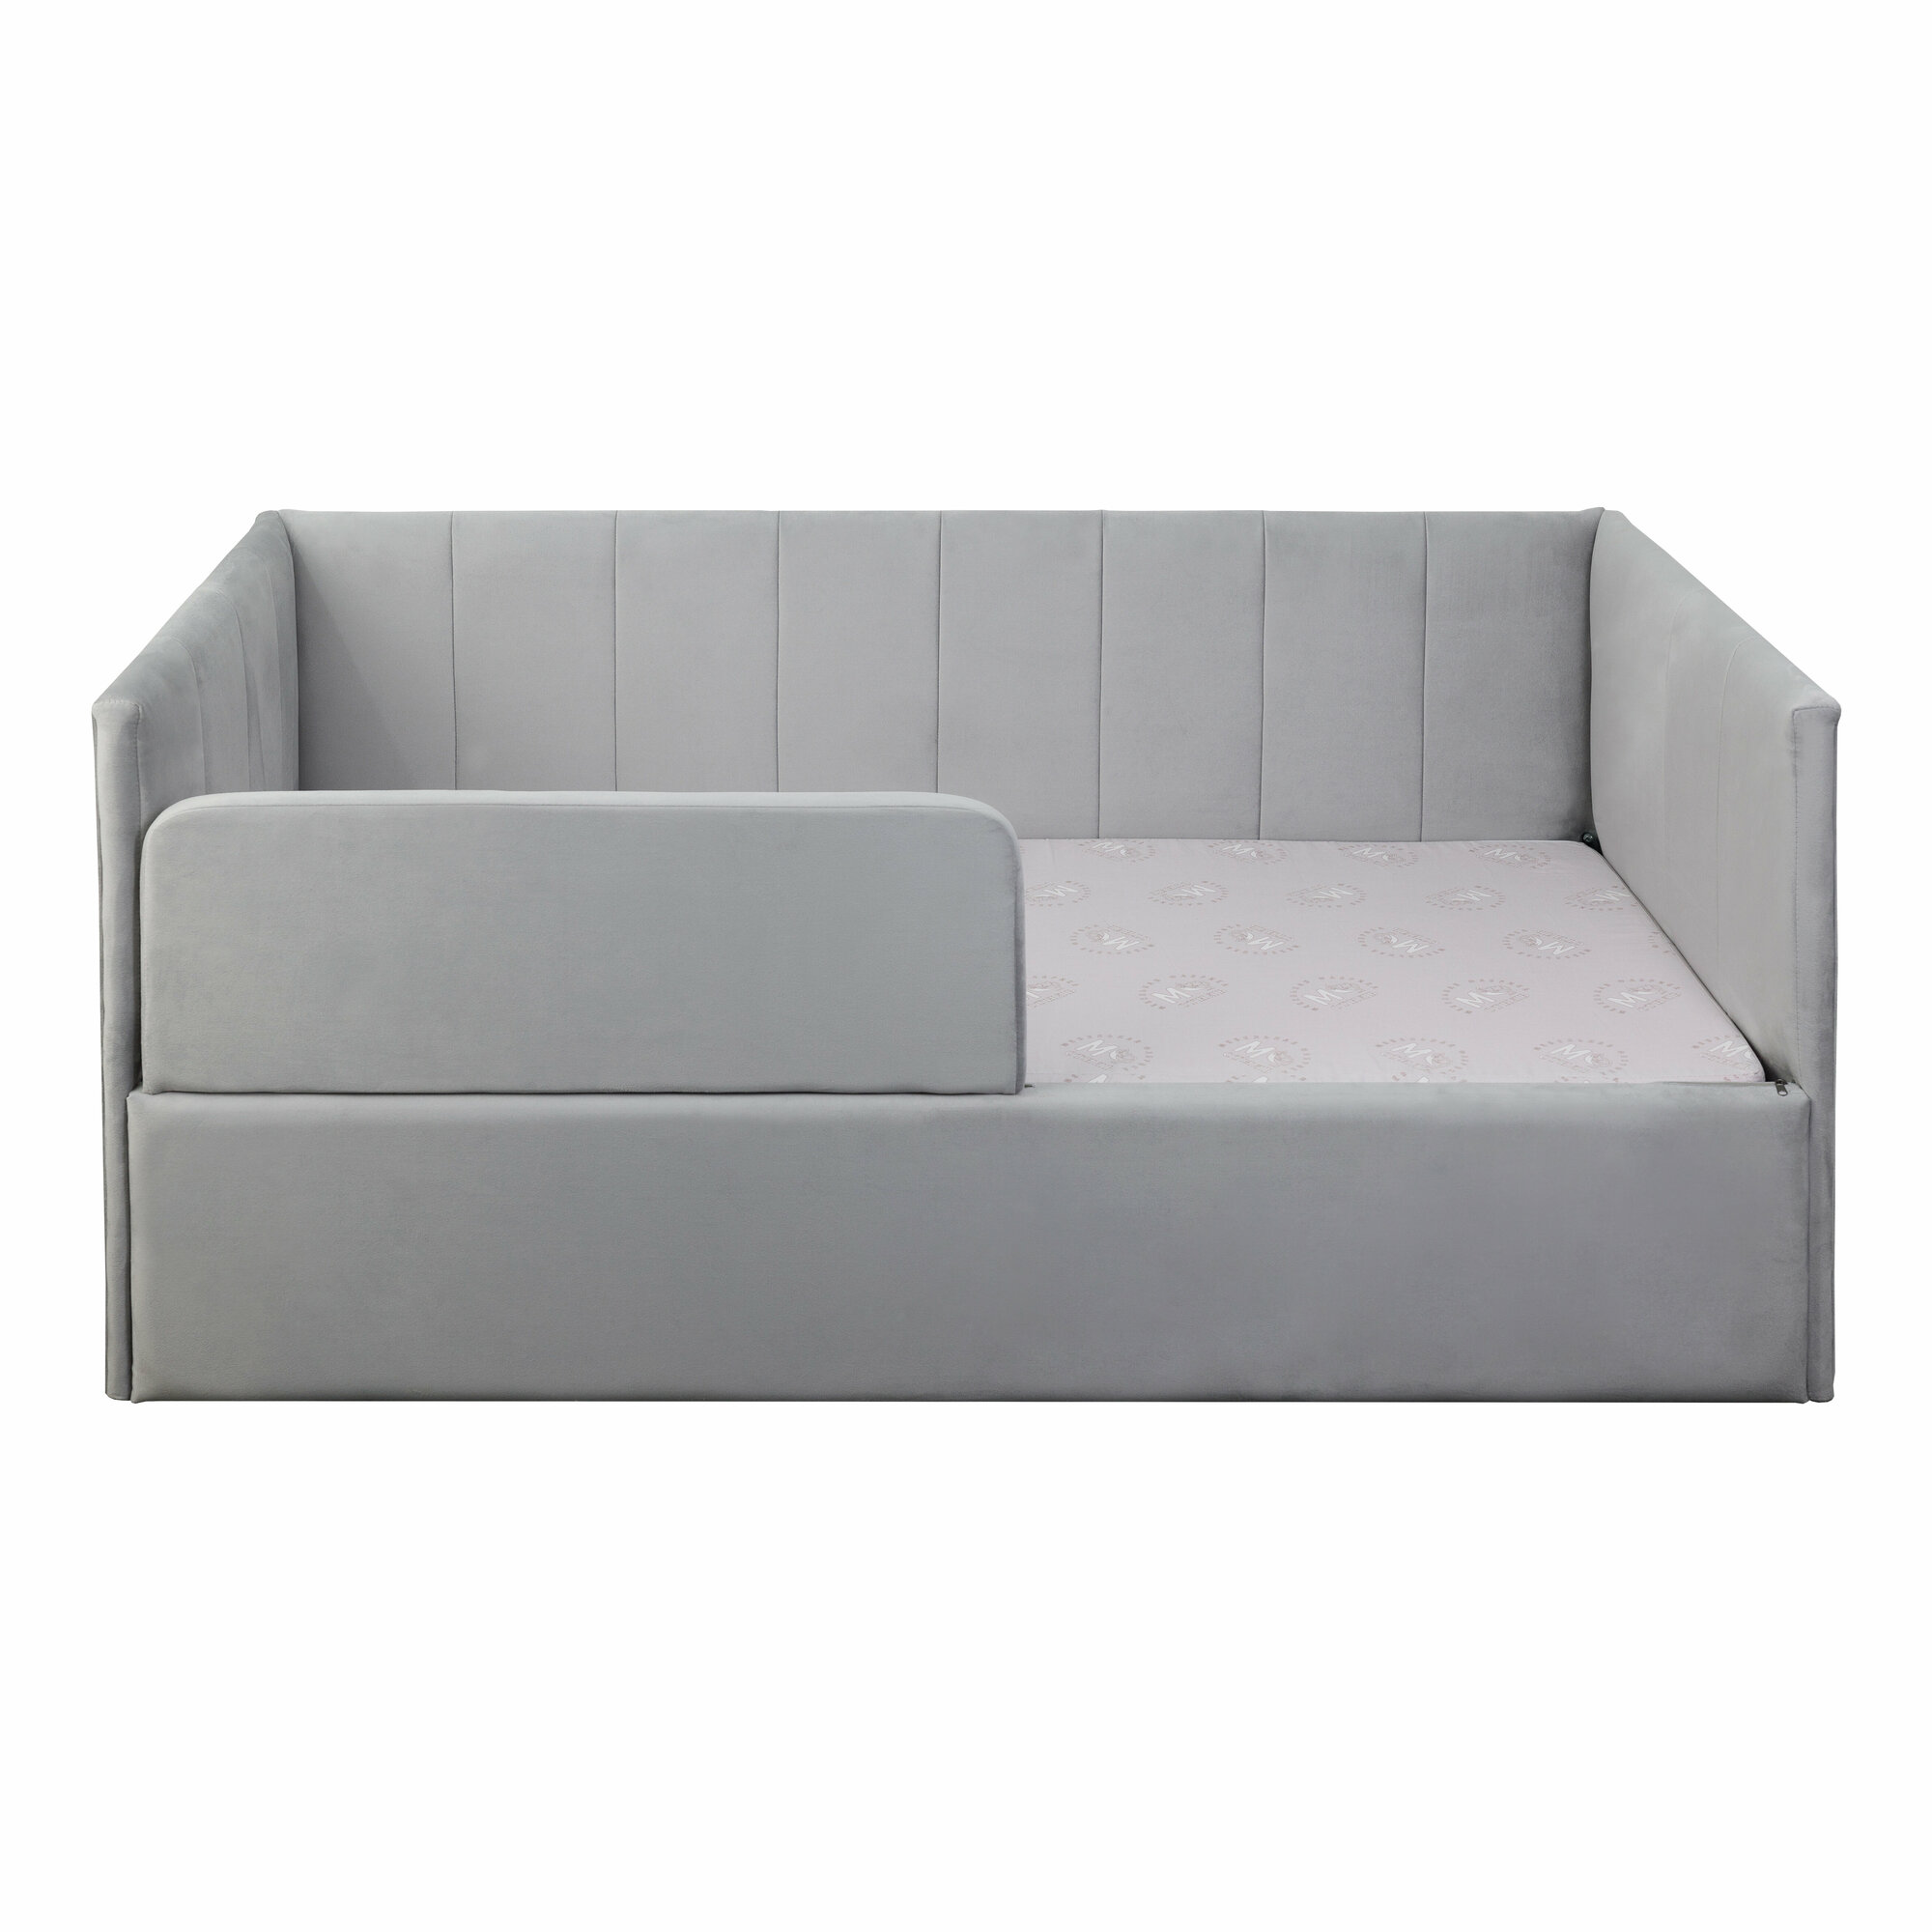 Кровать-диван Хагги 200*90 серая с защитным бортиком без ящика для хранения